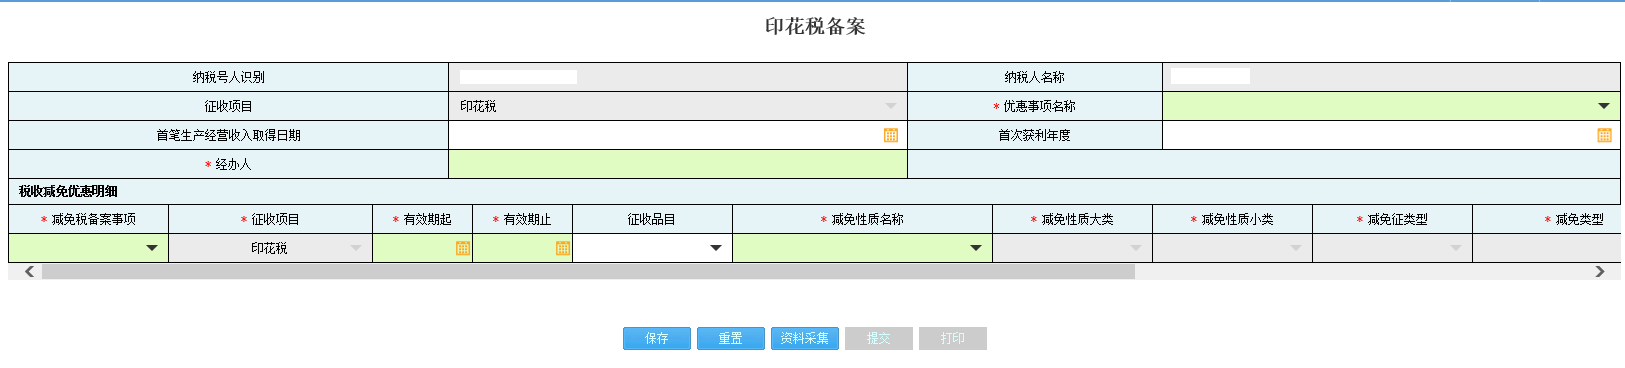 河南省电子税务局资源税备案资料采集